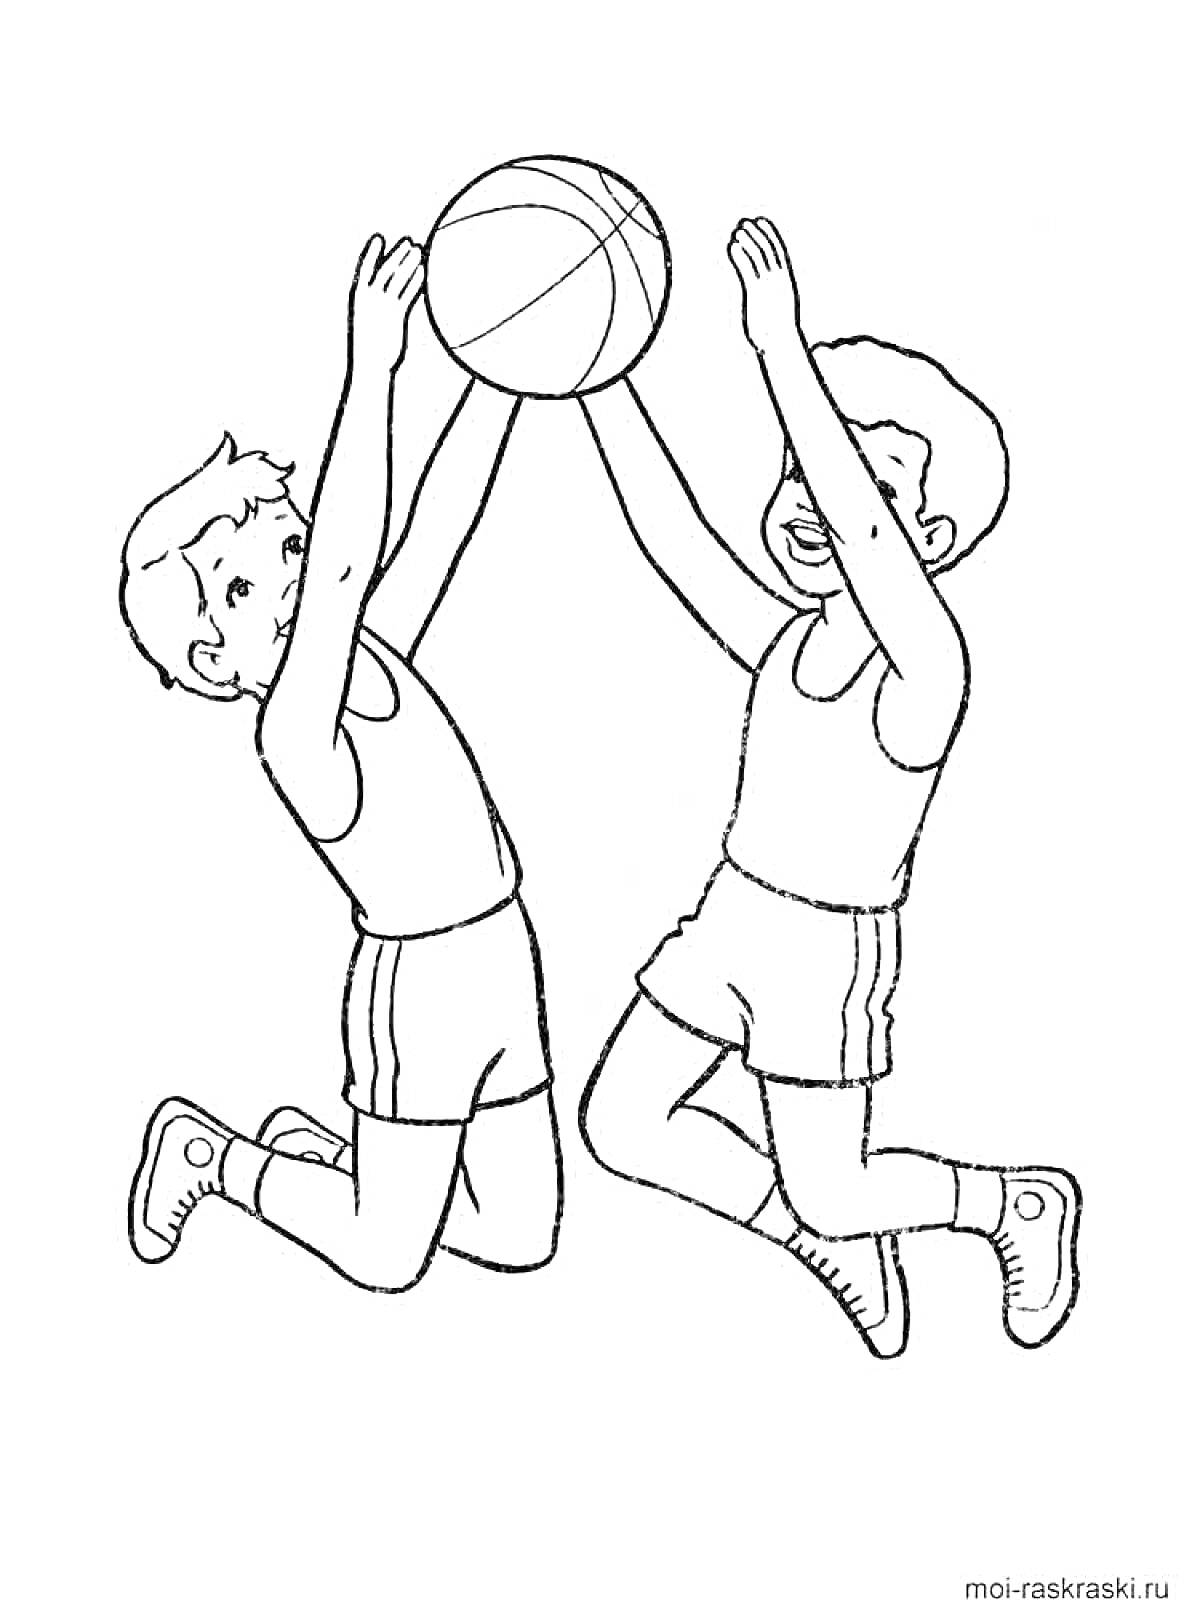 Раскраска Два мальчика играют в баскетбол, пытаясь поймать мяч